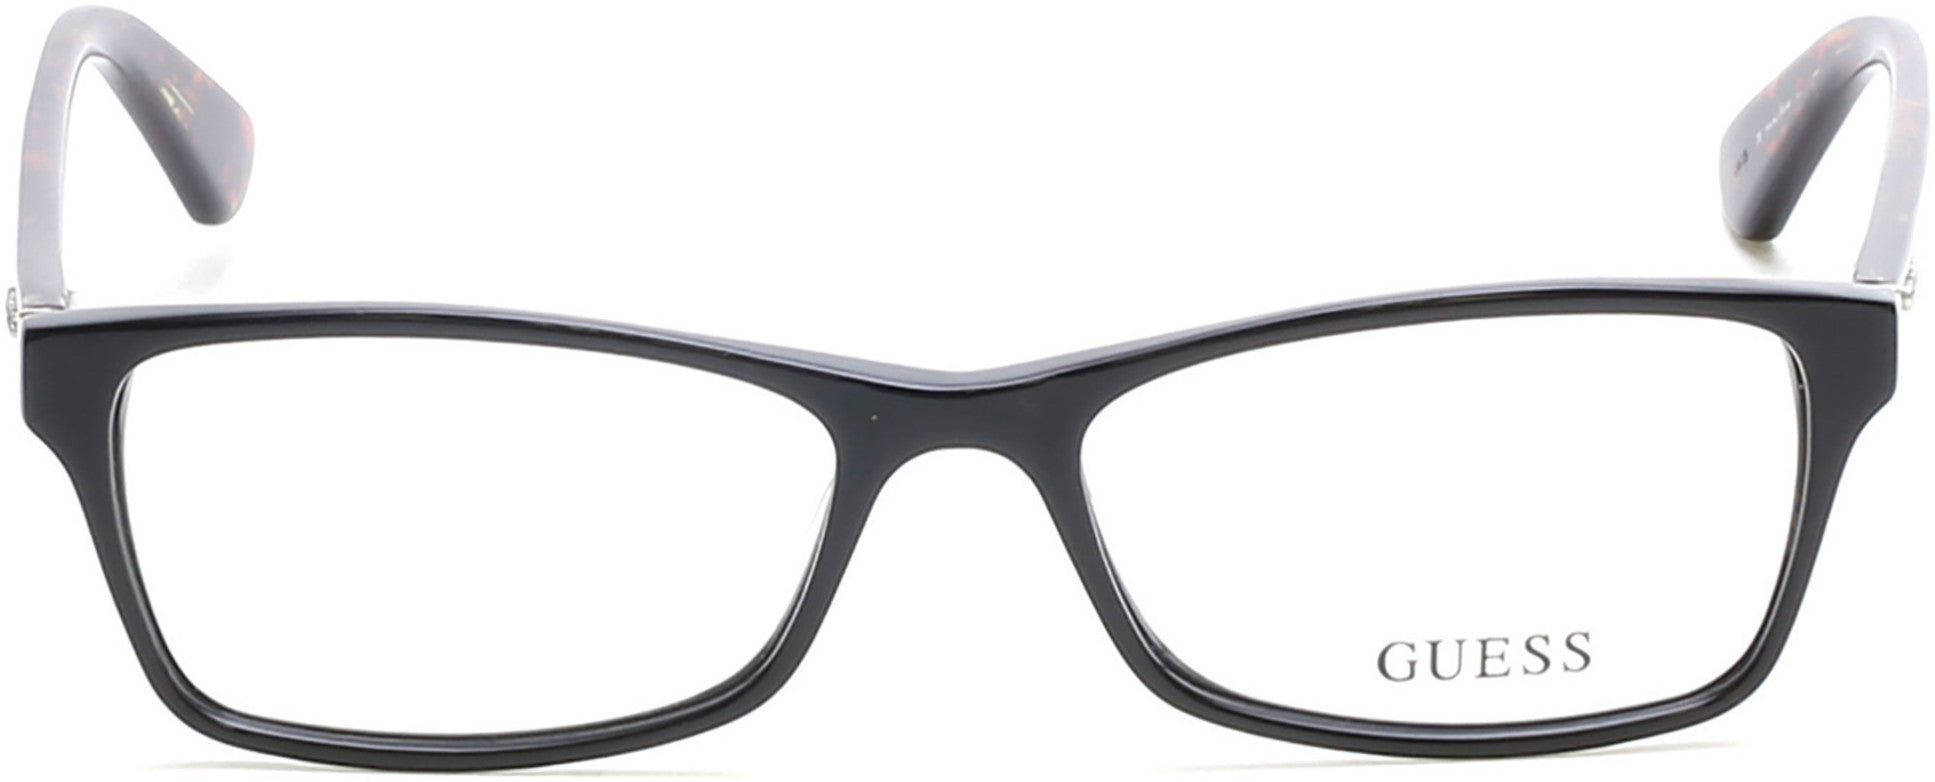 Guess GU2549 Geometric Eyeglasses 001-001 - Shiny Black